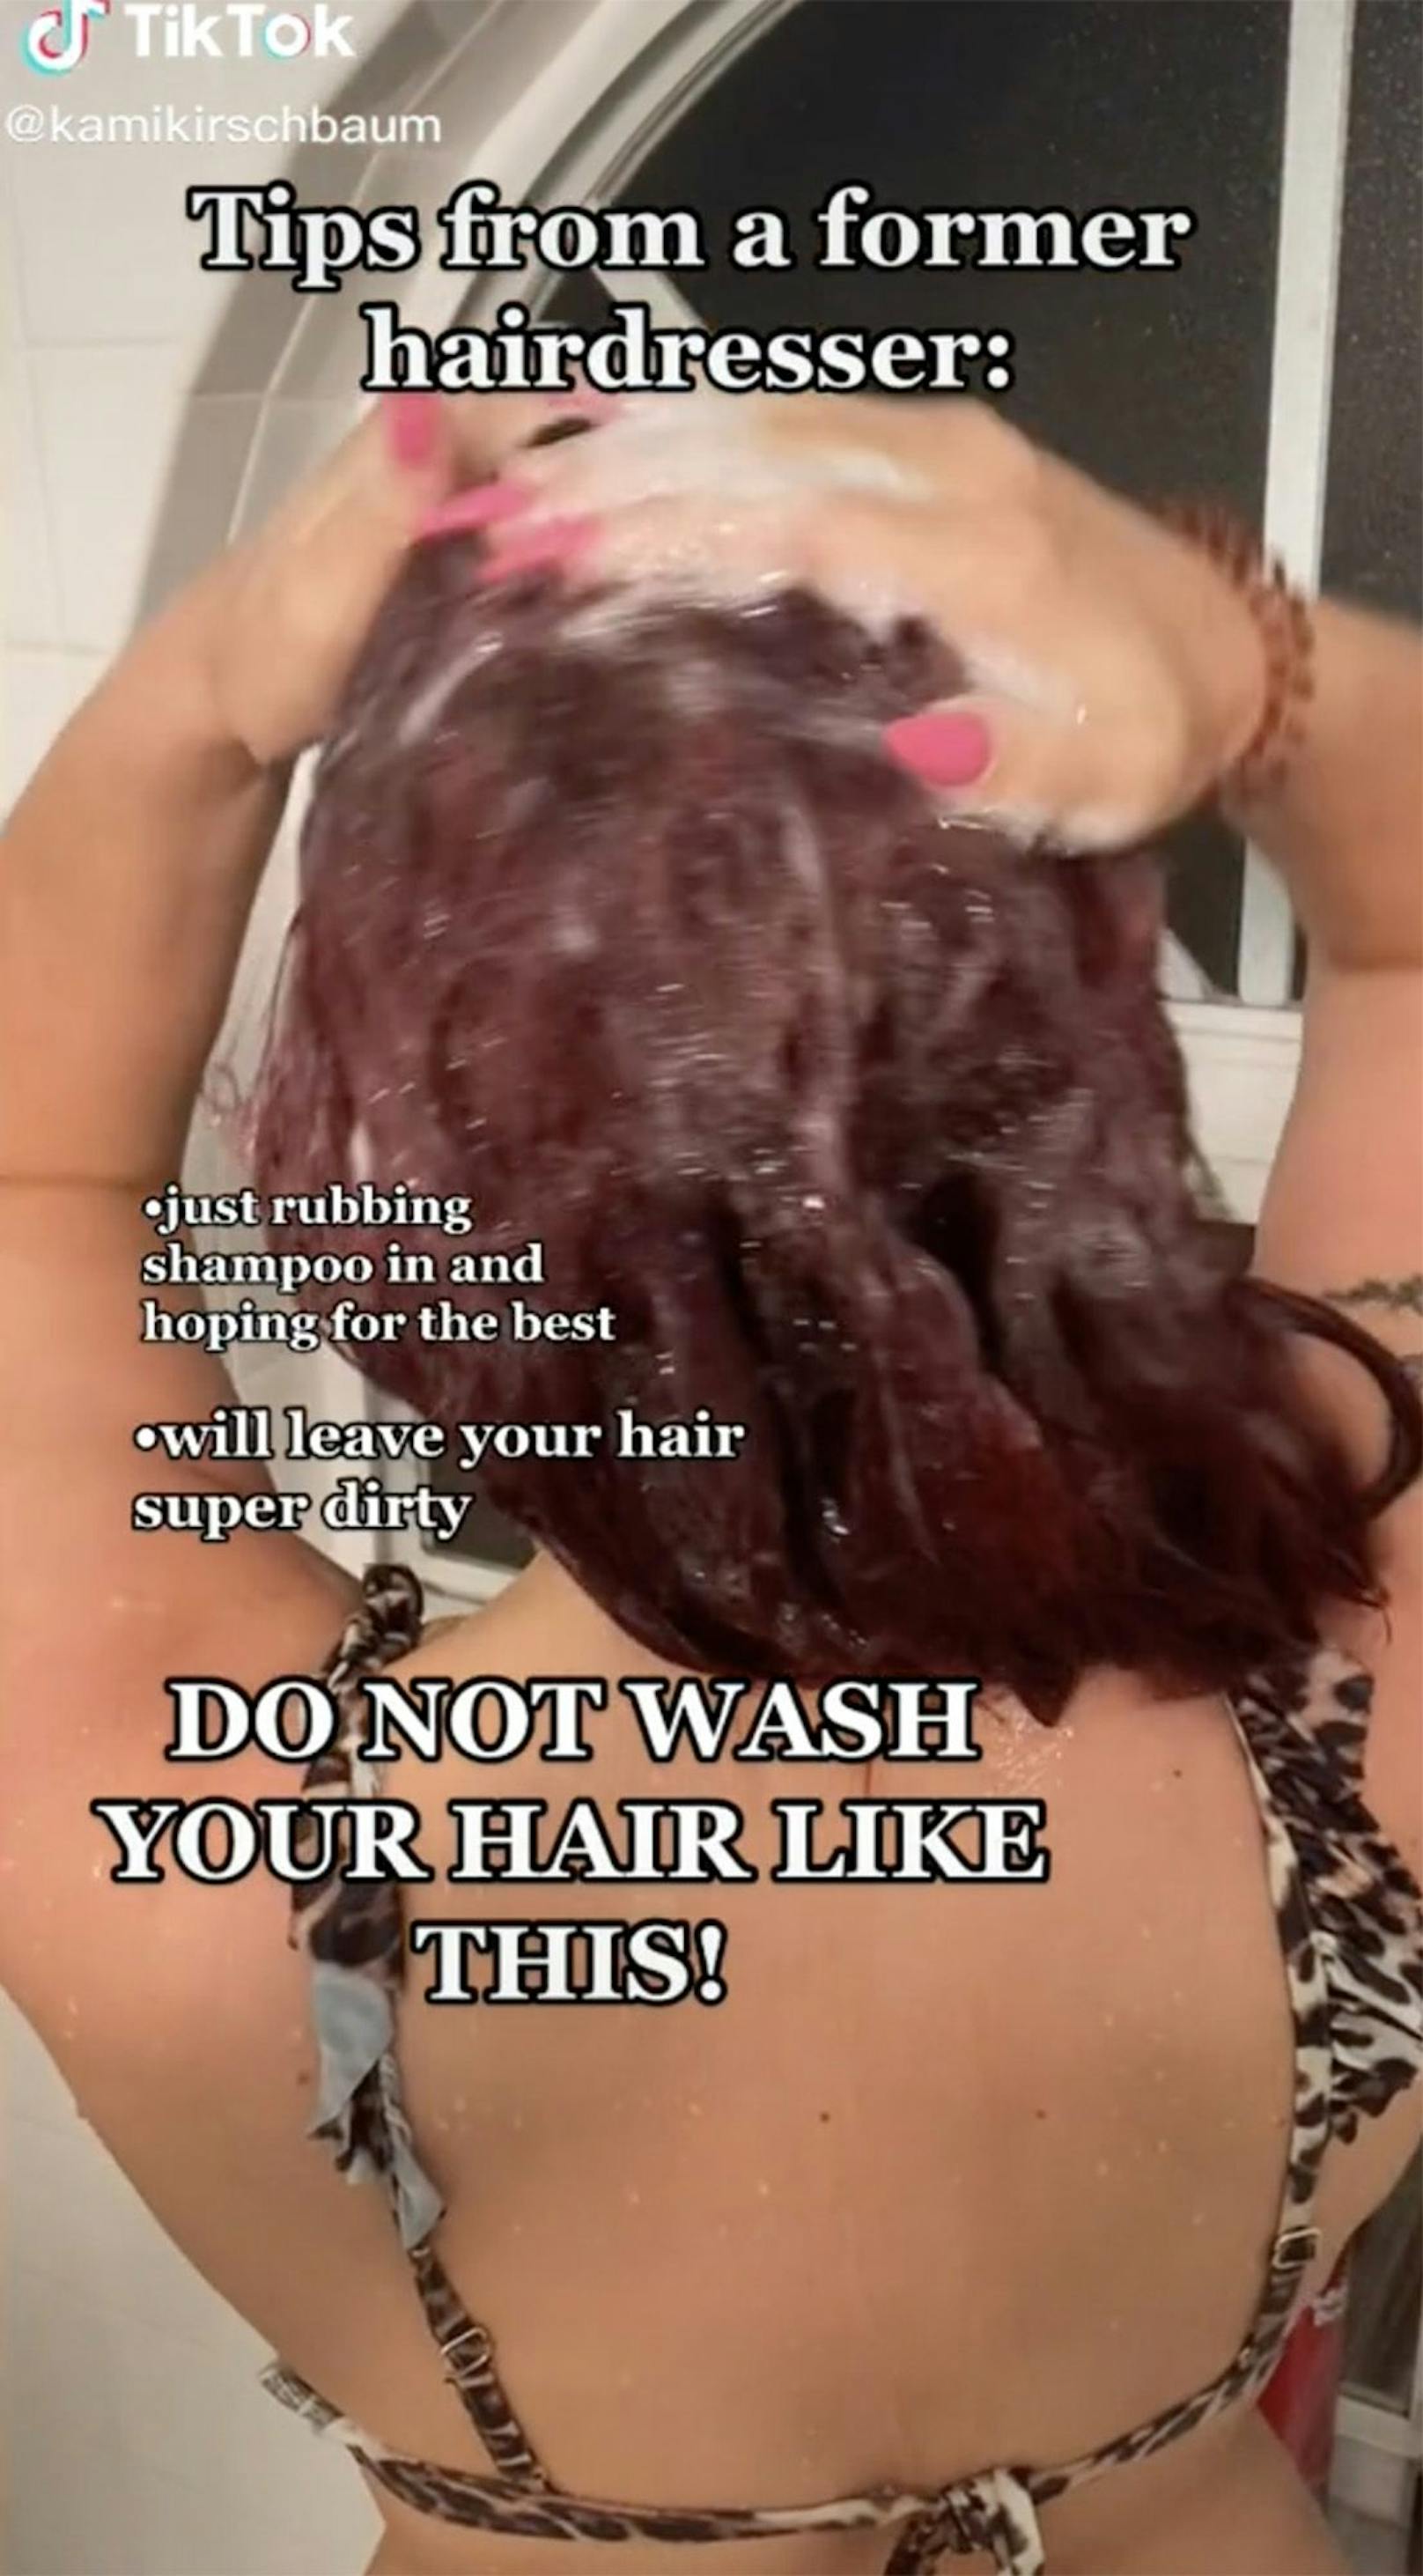 Das Shampoo einfach in die Haare massieren und das Beste hoffen, ist laut Kami Kirschbaum die falsche Methode. So würden die Haare niemals sauber werden.